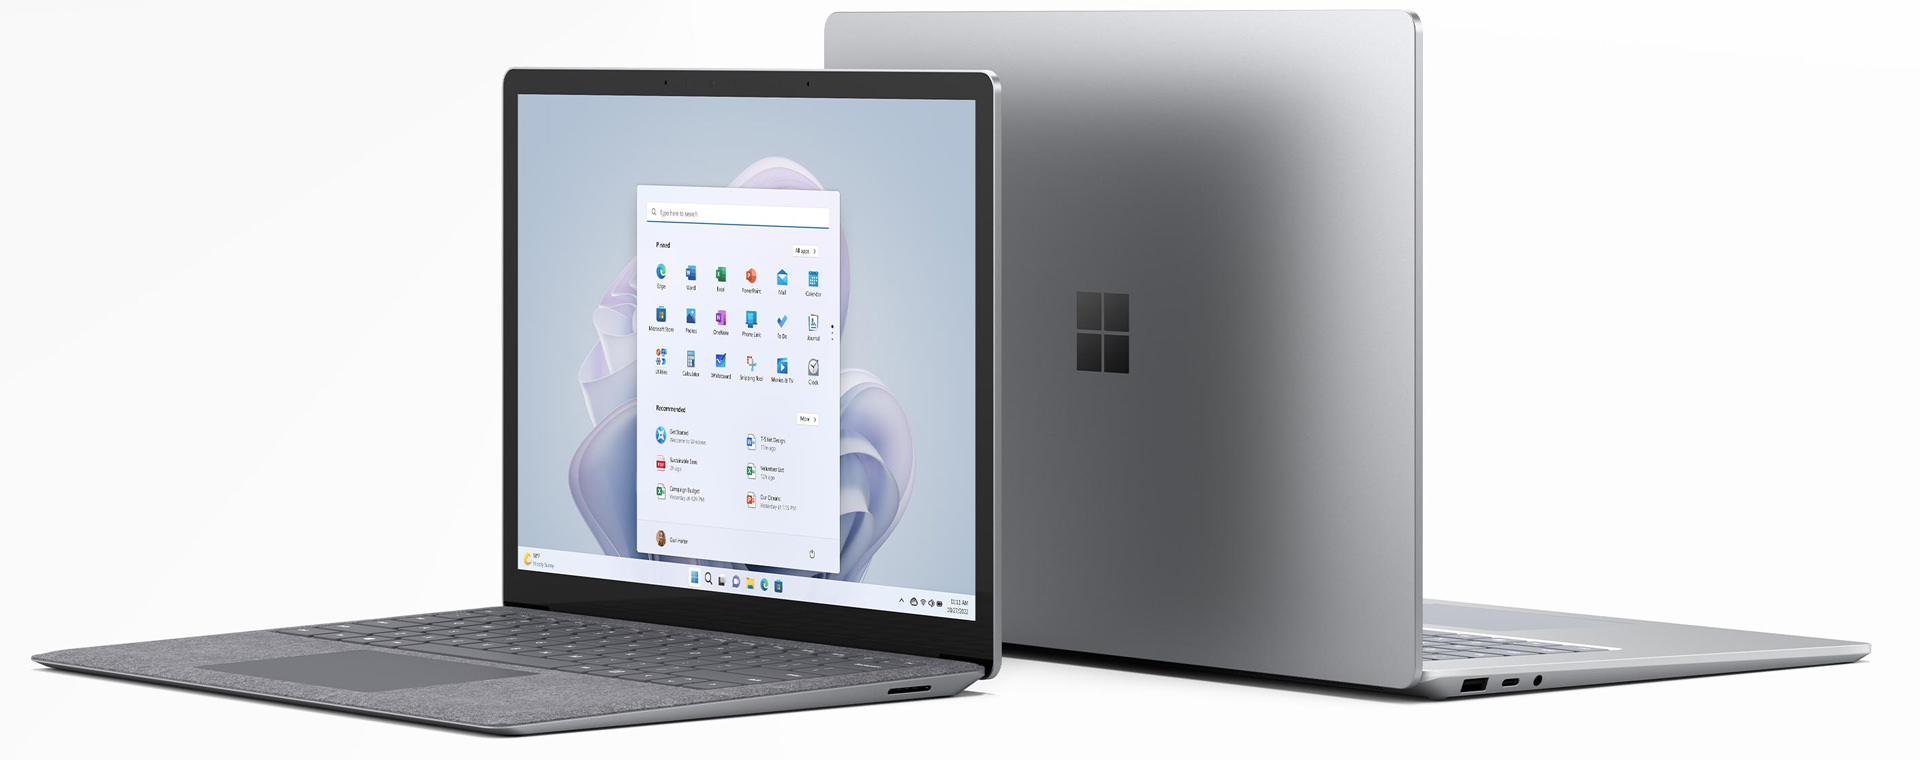 سرفیس لپ تاپ ۵ – Surface Laptop 5 – 15 inch / Core i7 / RAM 8GB / 512GB SSD